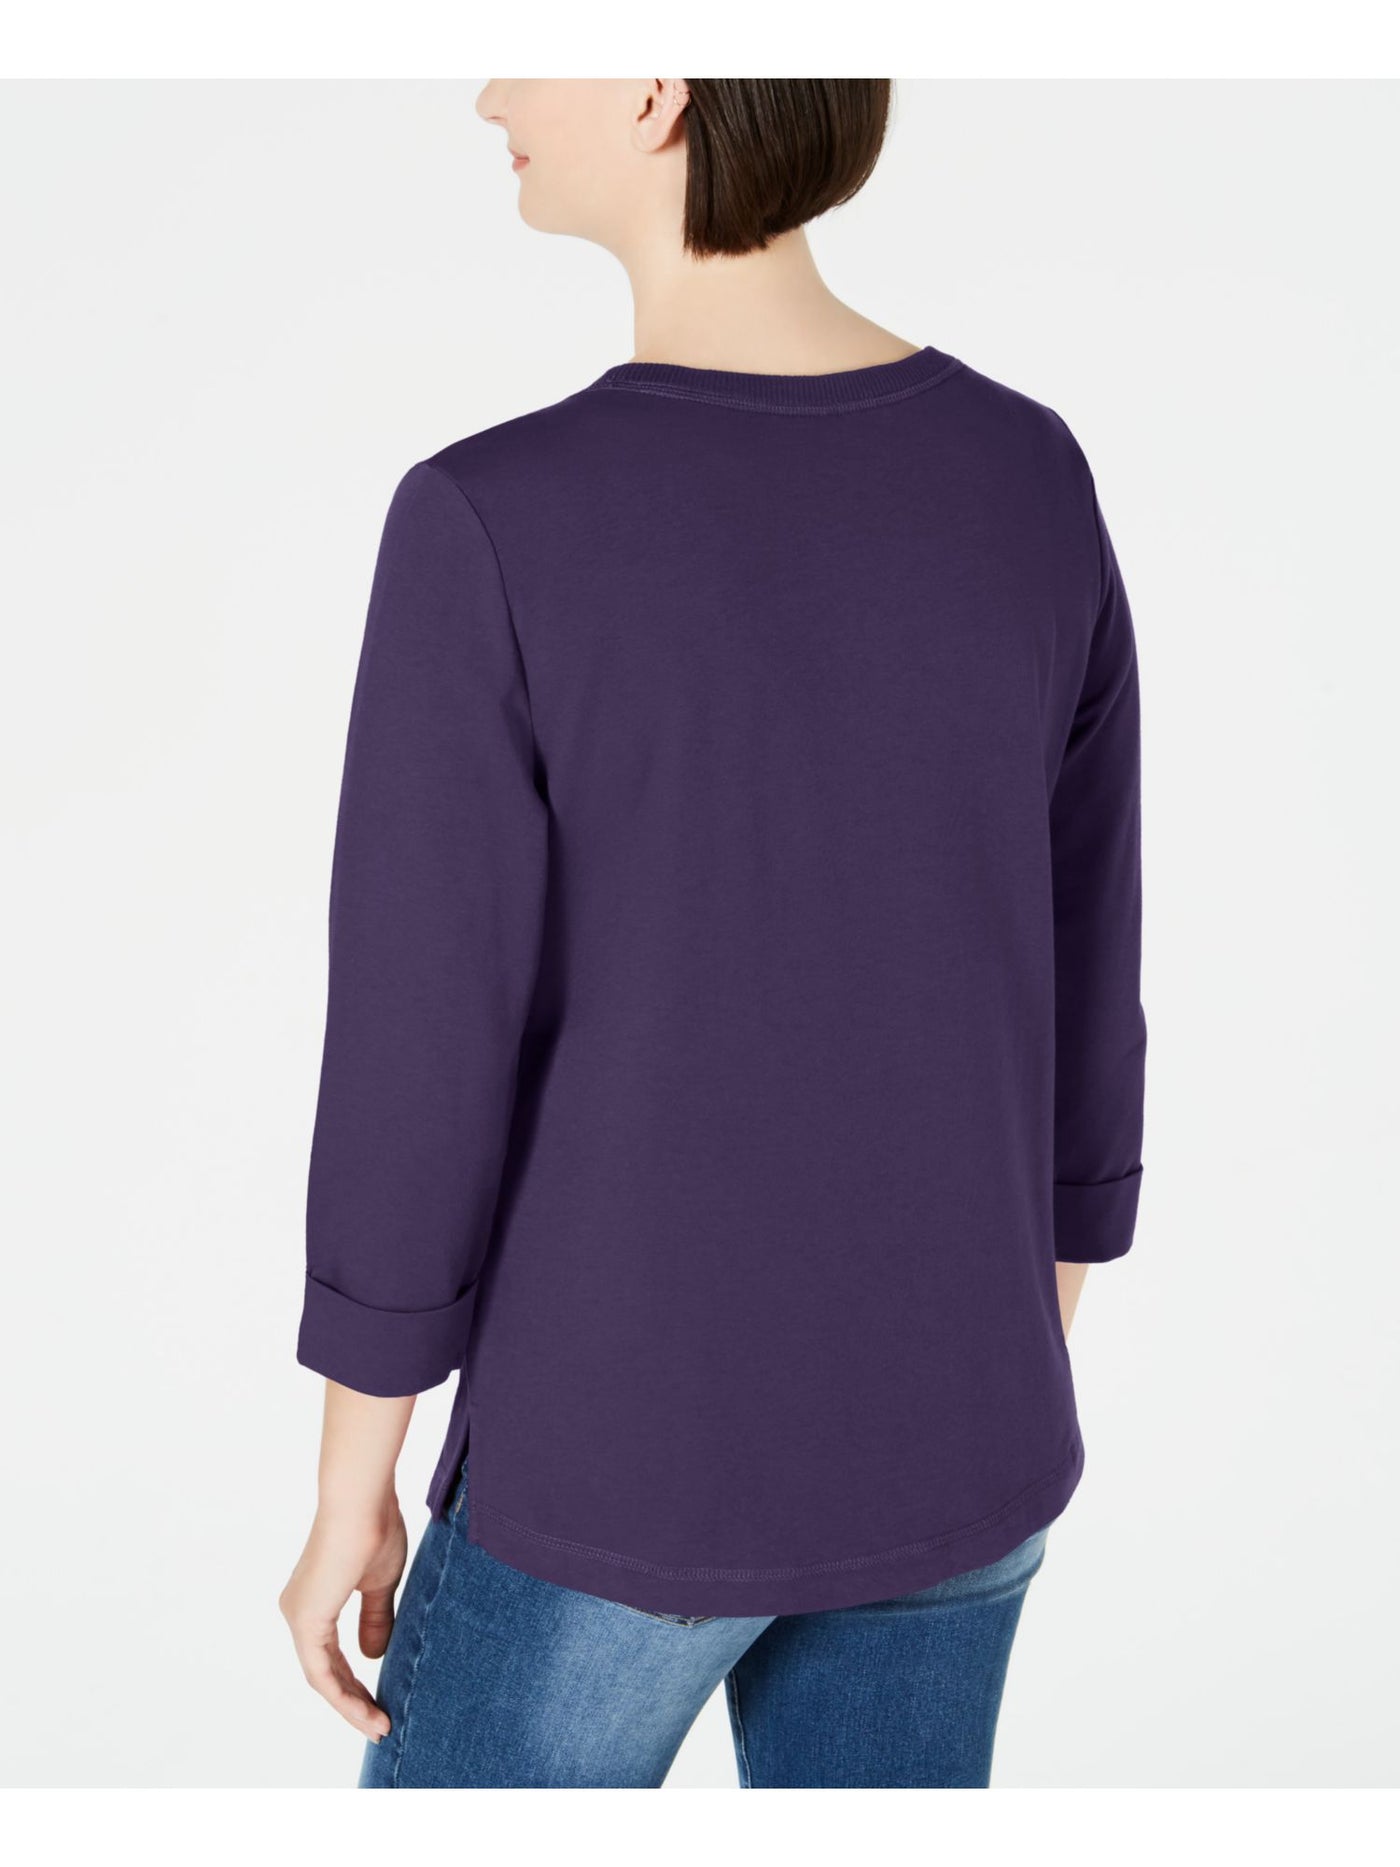 KAREN SCOTT Womens Purple 3/4 Sleeve Scoop Neck Active Wear Sweater Size: S